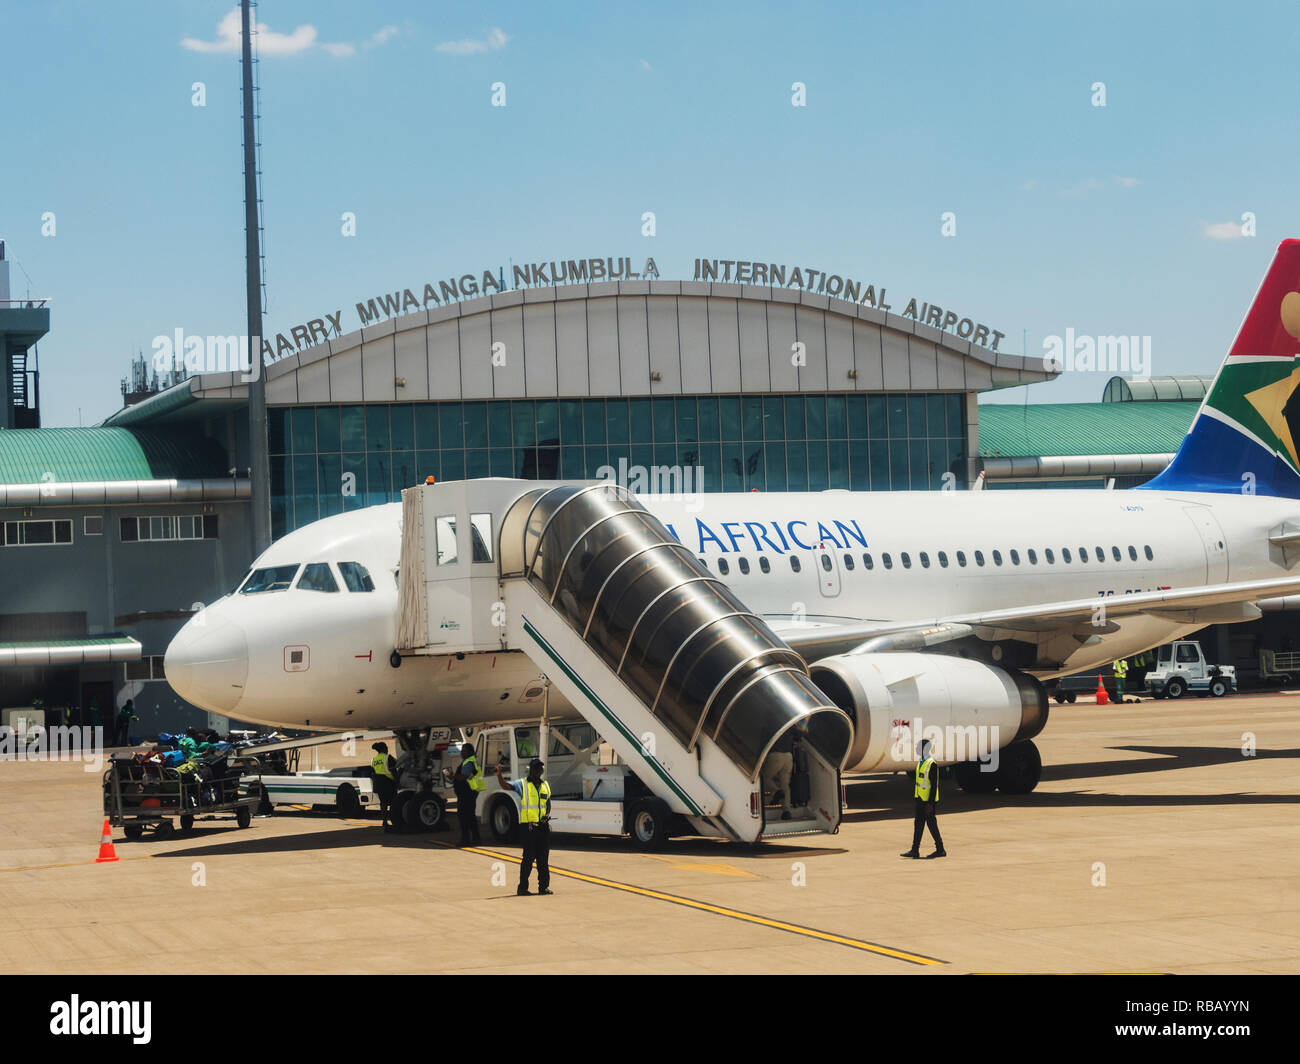 LIVINGSTON, ZAMBIA - NOVEMBER 24, 2018. Harry Mwanga Nkumbula International Airport in Livingstone, Zambia, Africa Stock Photo